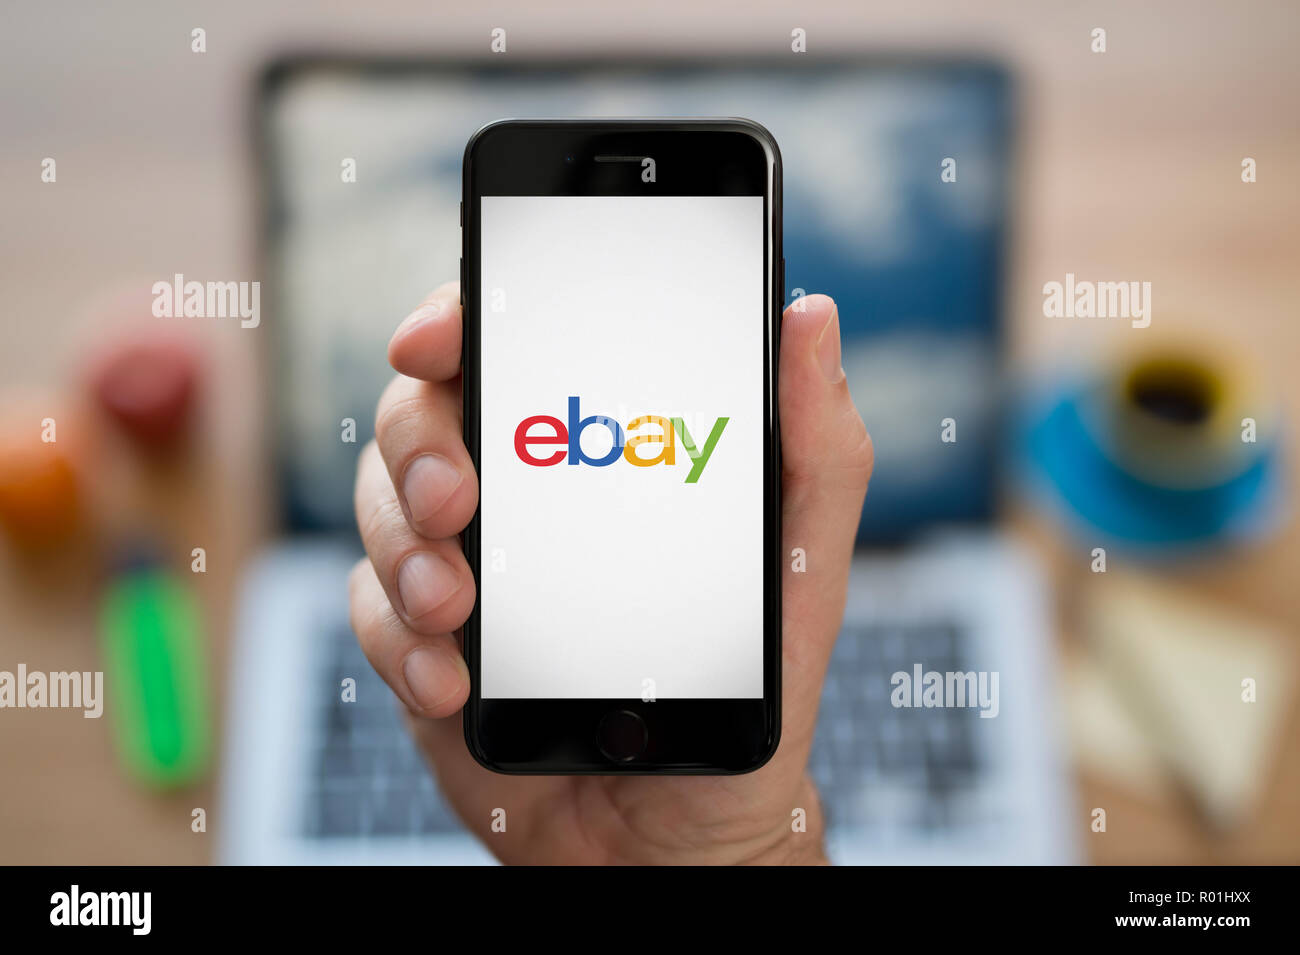 Un homme se penche sur son iPhone qui affiche le logo ebay, tandis que s'assit à son bureau informatique (usage éditorial uniquement). Banque D'Images